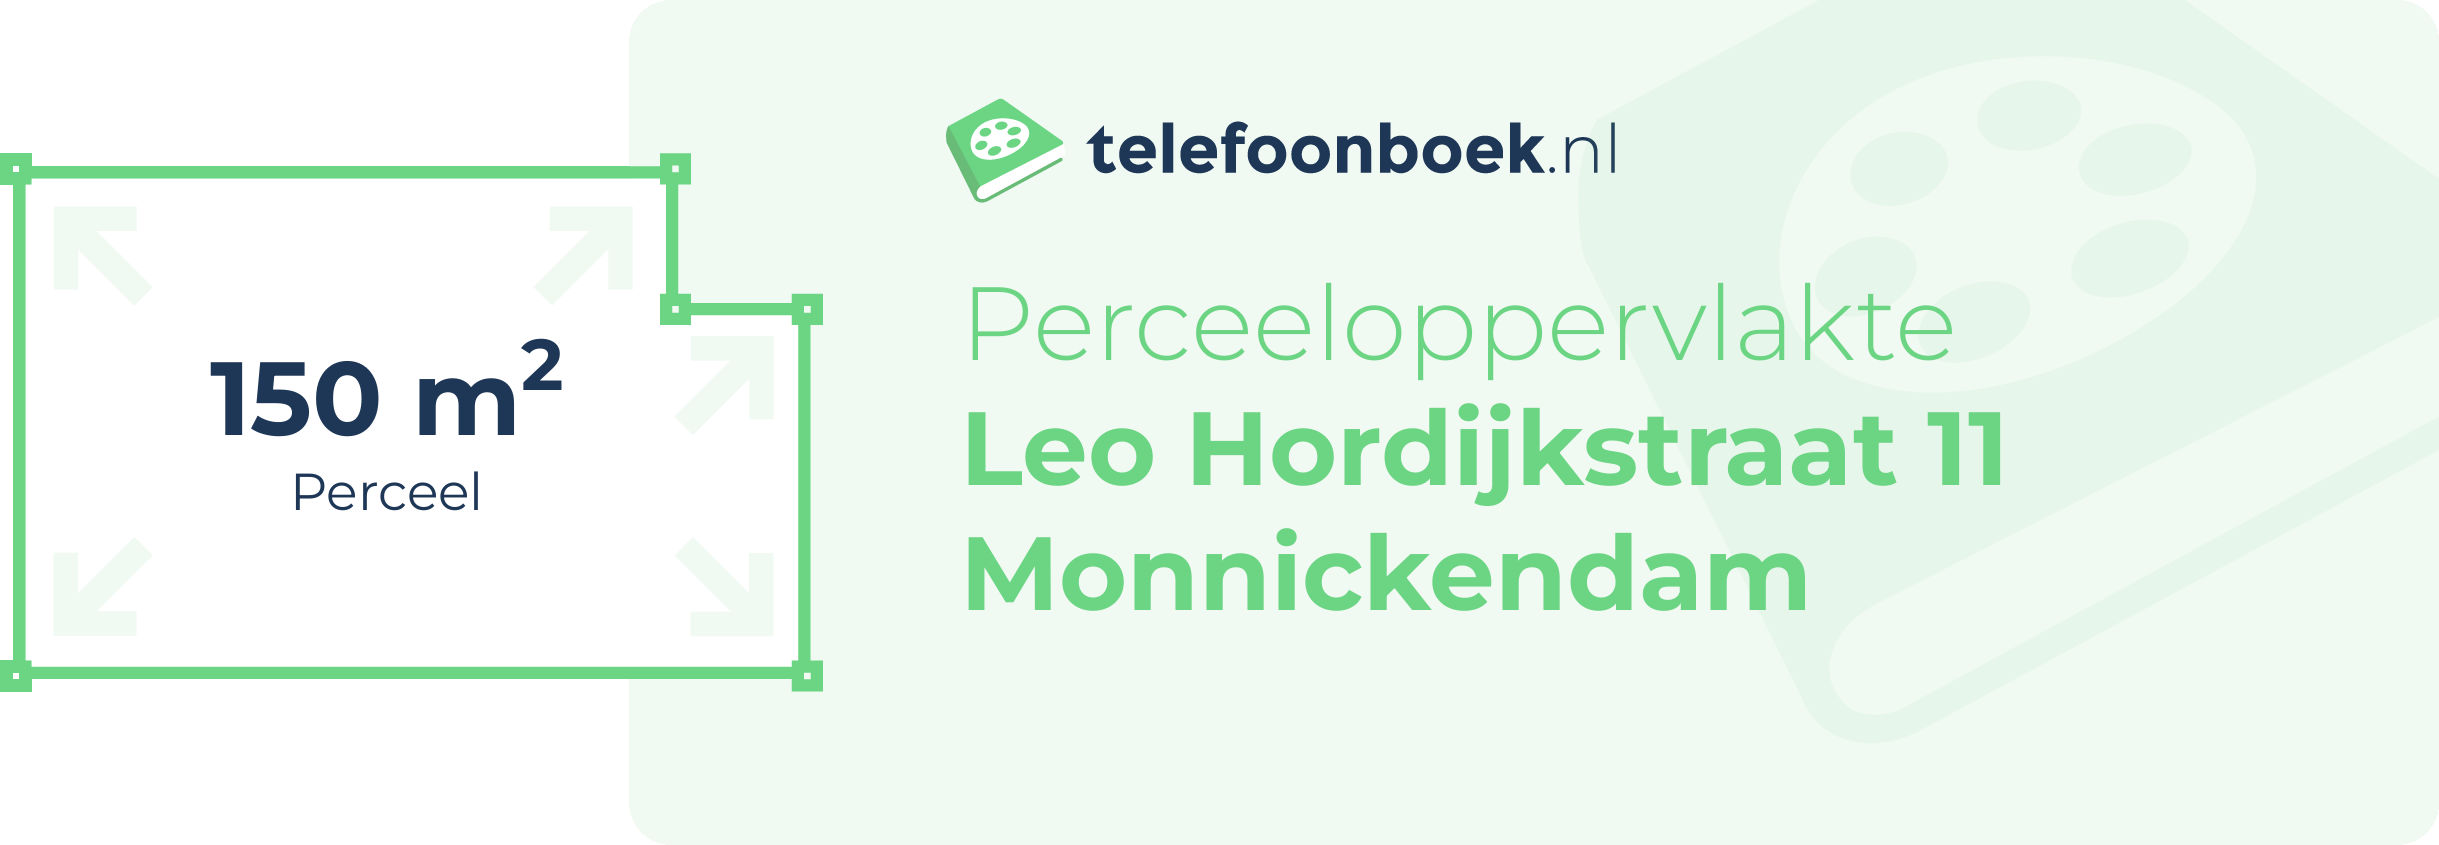 Perceeloppervlakte Leo Hordijkstraat 11 Monnickendam